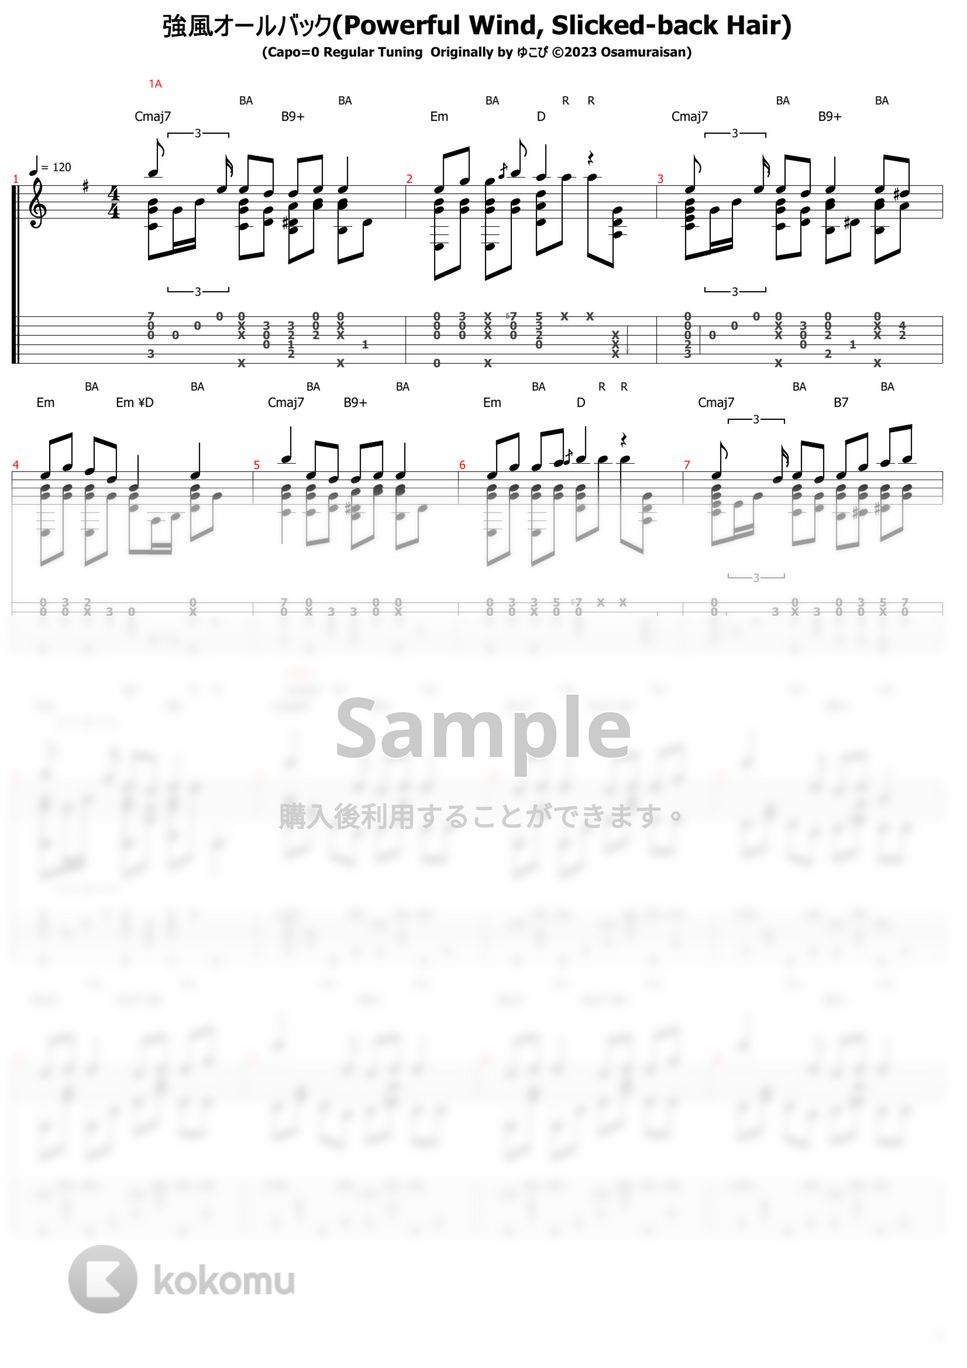 ゆこぴ - 強風オールバック (ソロギター) by おさむらいさん